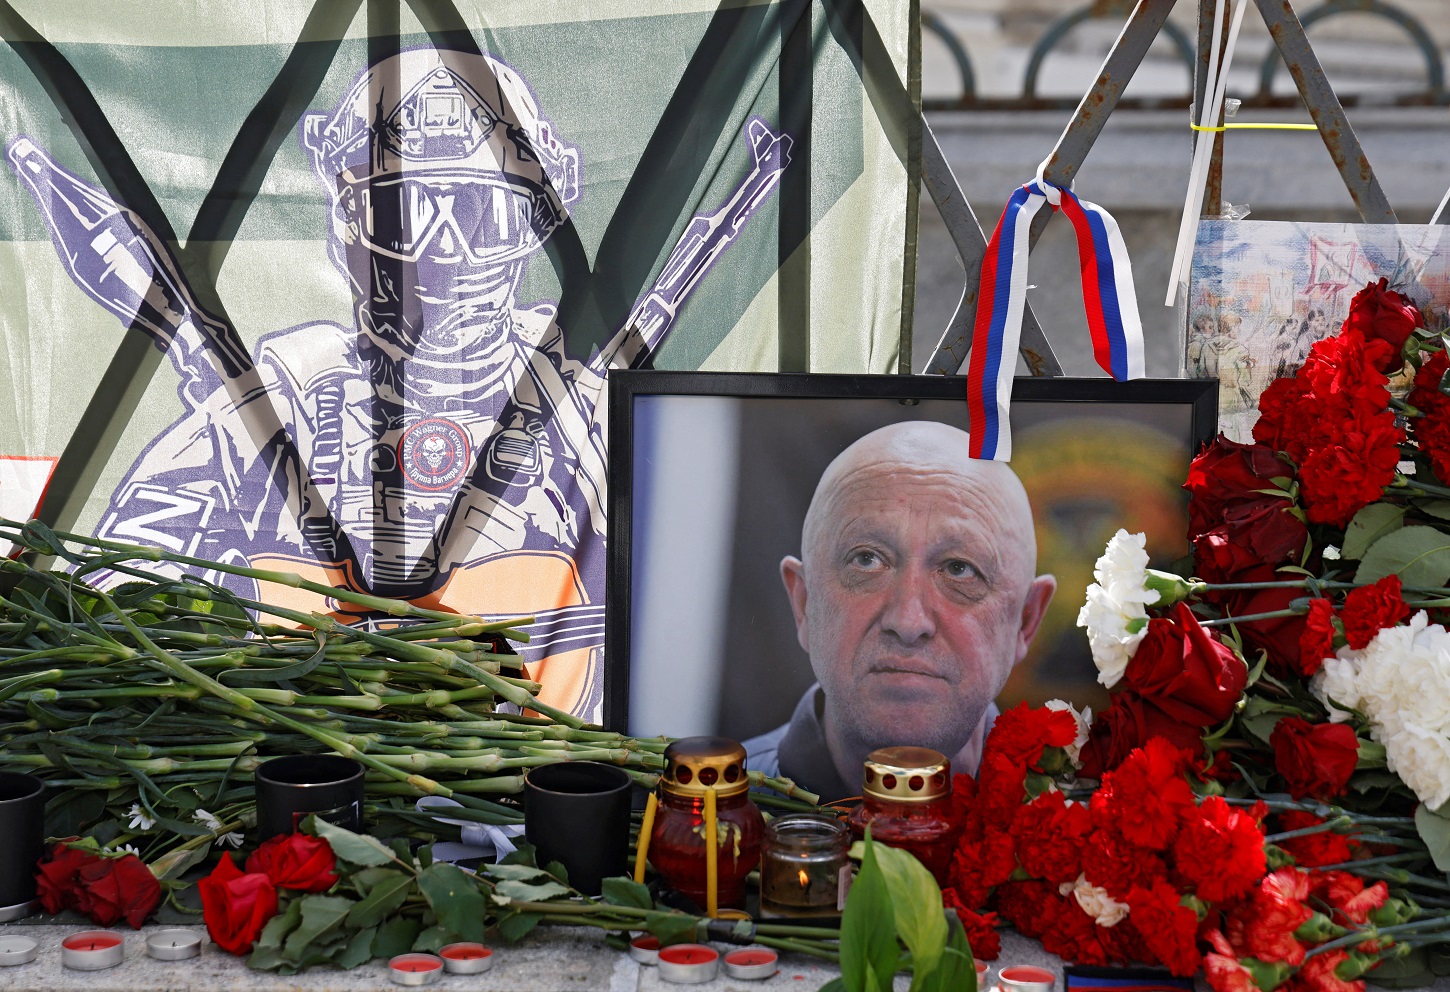 Un retrato del jefe del grupo privado ruso de mercenarios Wagner, fallecido en un accidente aéreo, en un memorial en Moscú. REUTERS/Maxim Shemetov